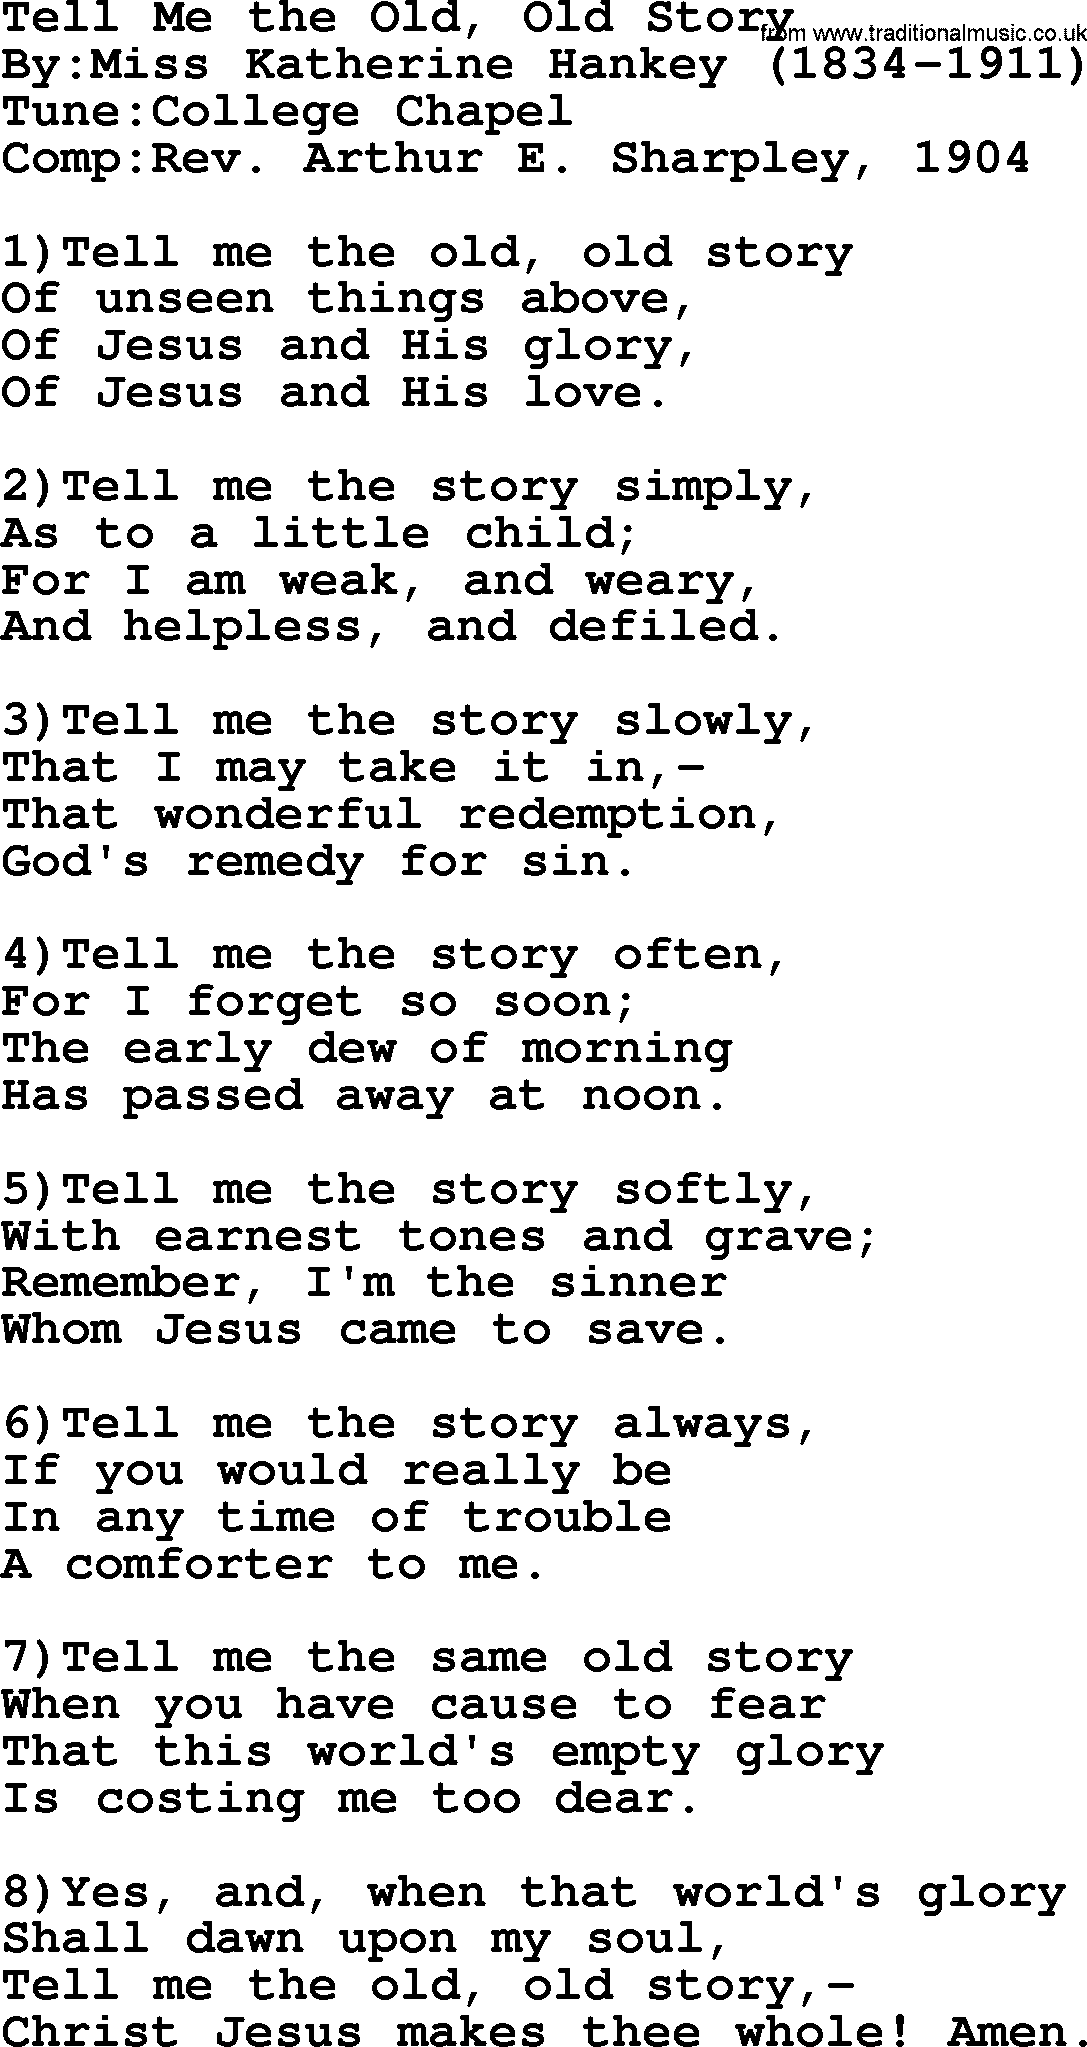 Methodist Hymn: Tell Me The Old, Old Story, lyrics